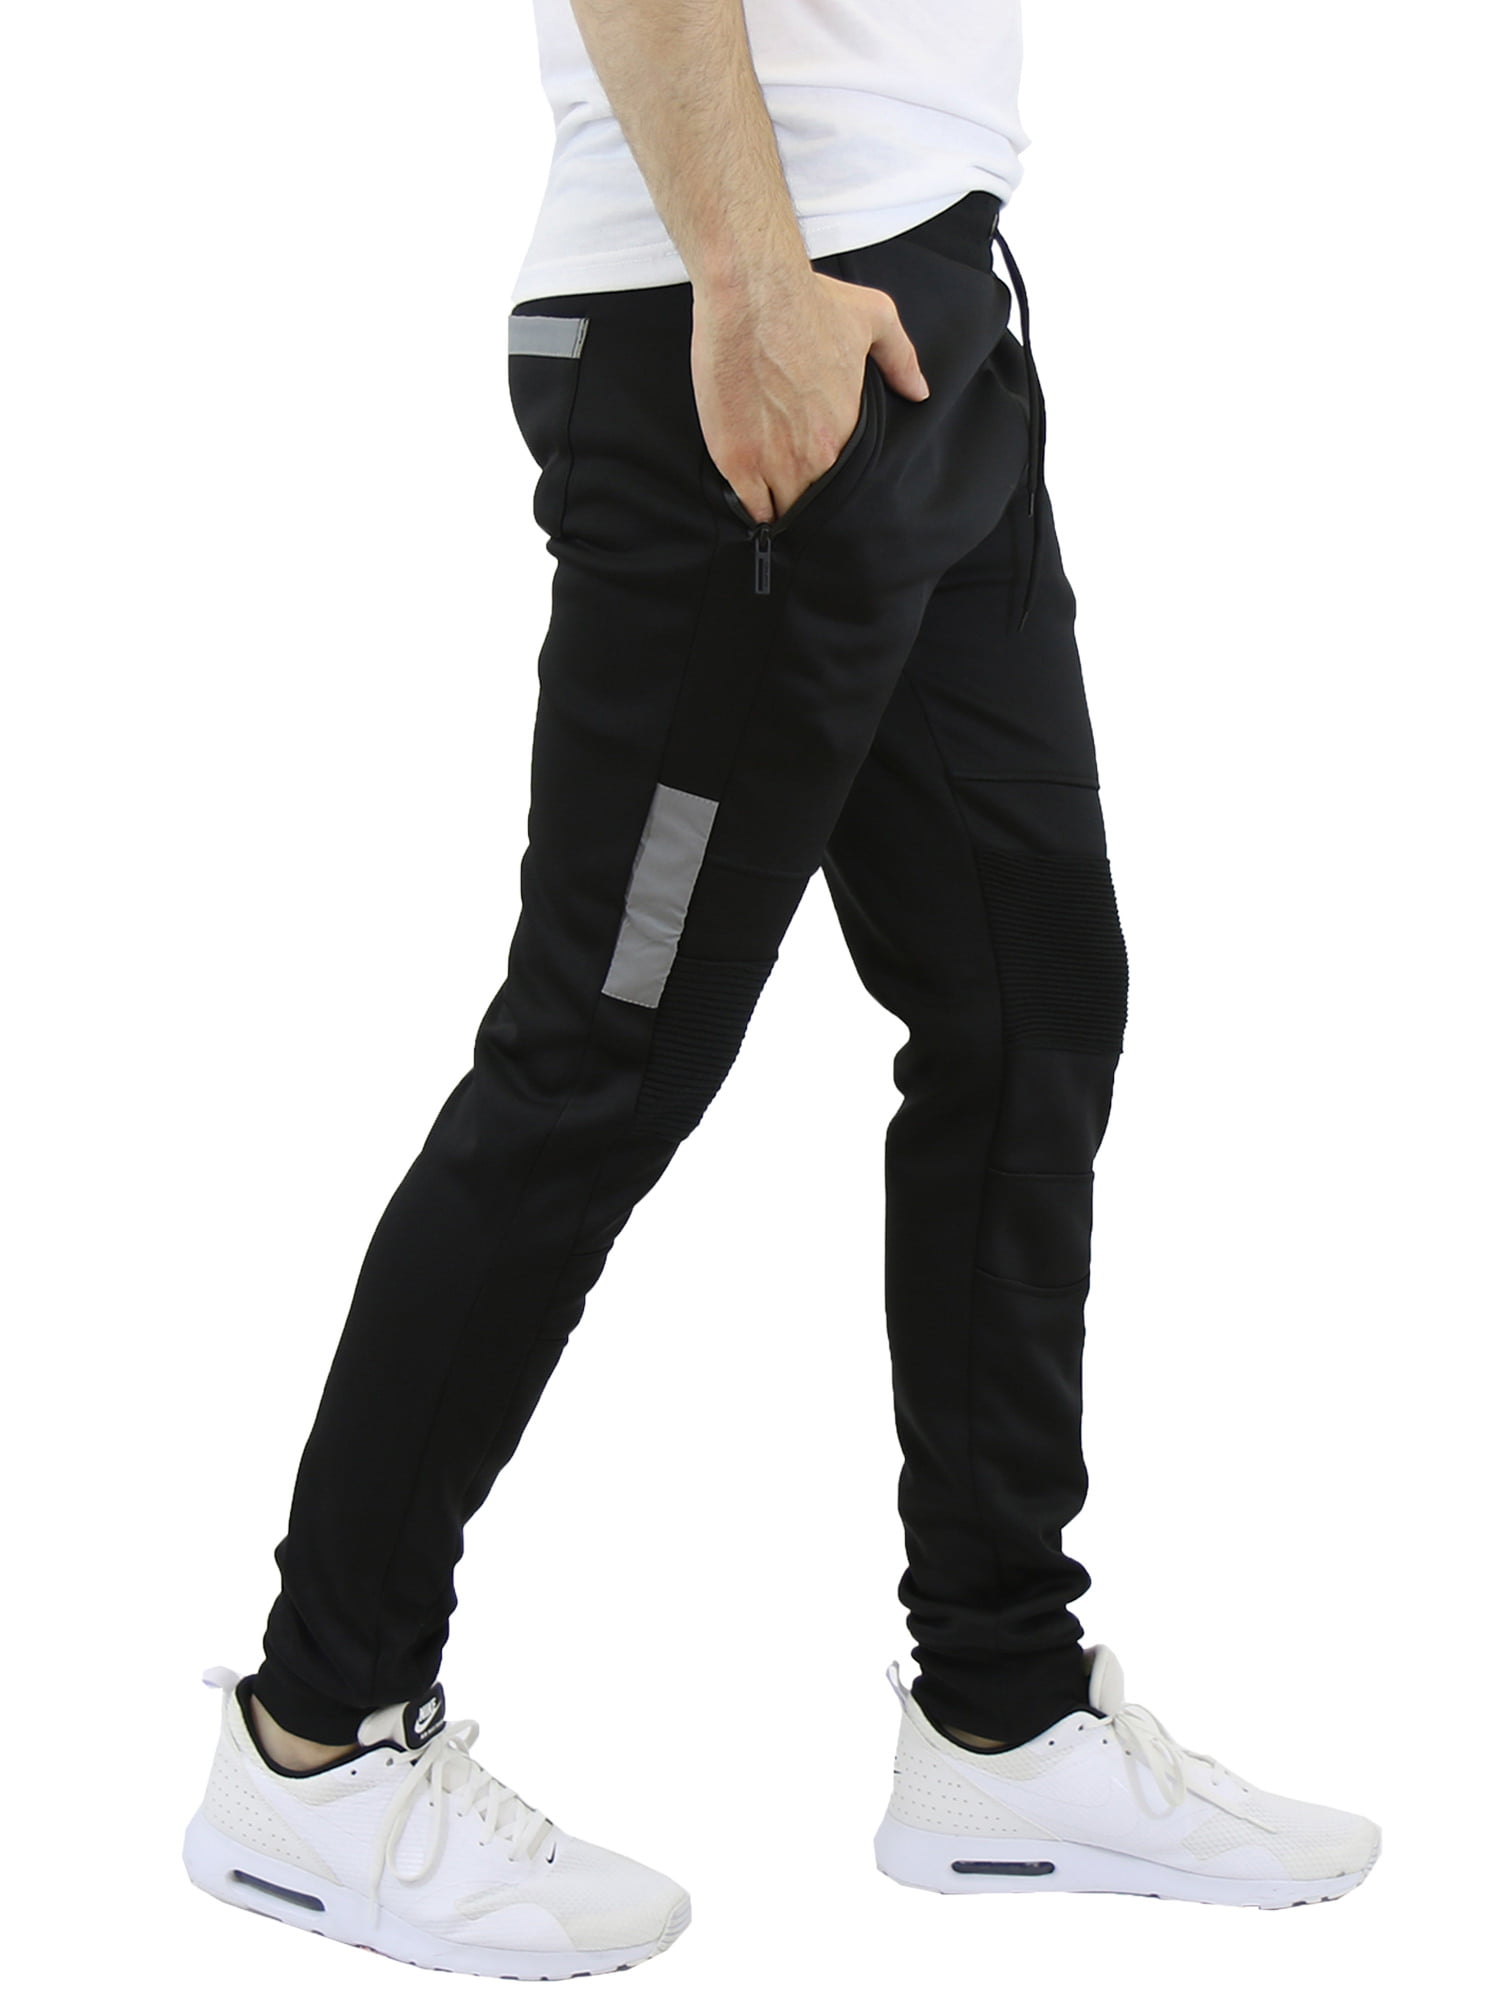 Men's FleeceLined Joggers with Zipper Pockets